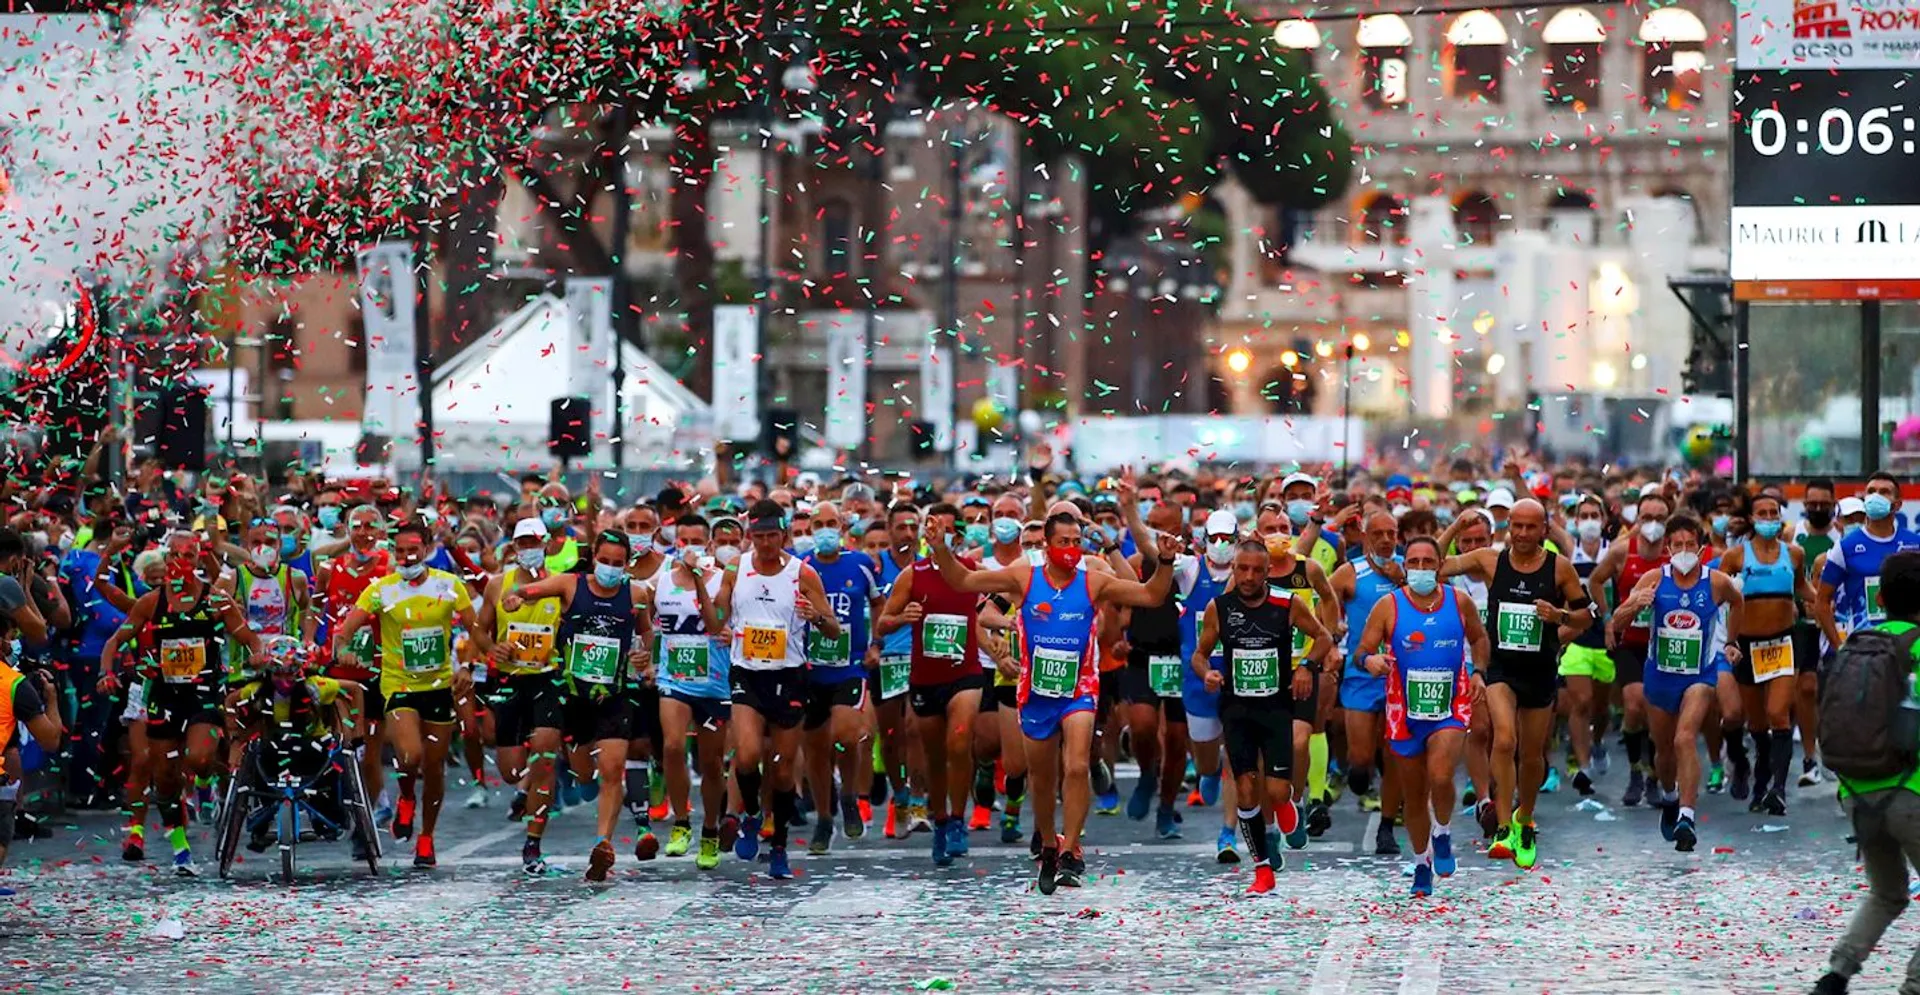 Rome Marathon 